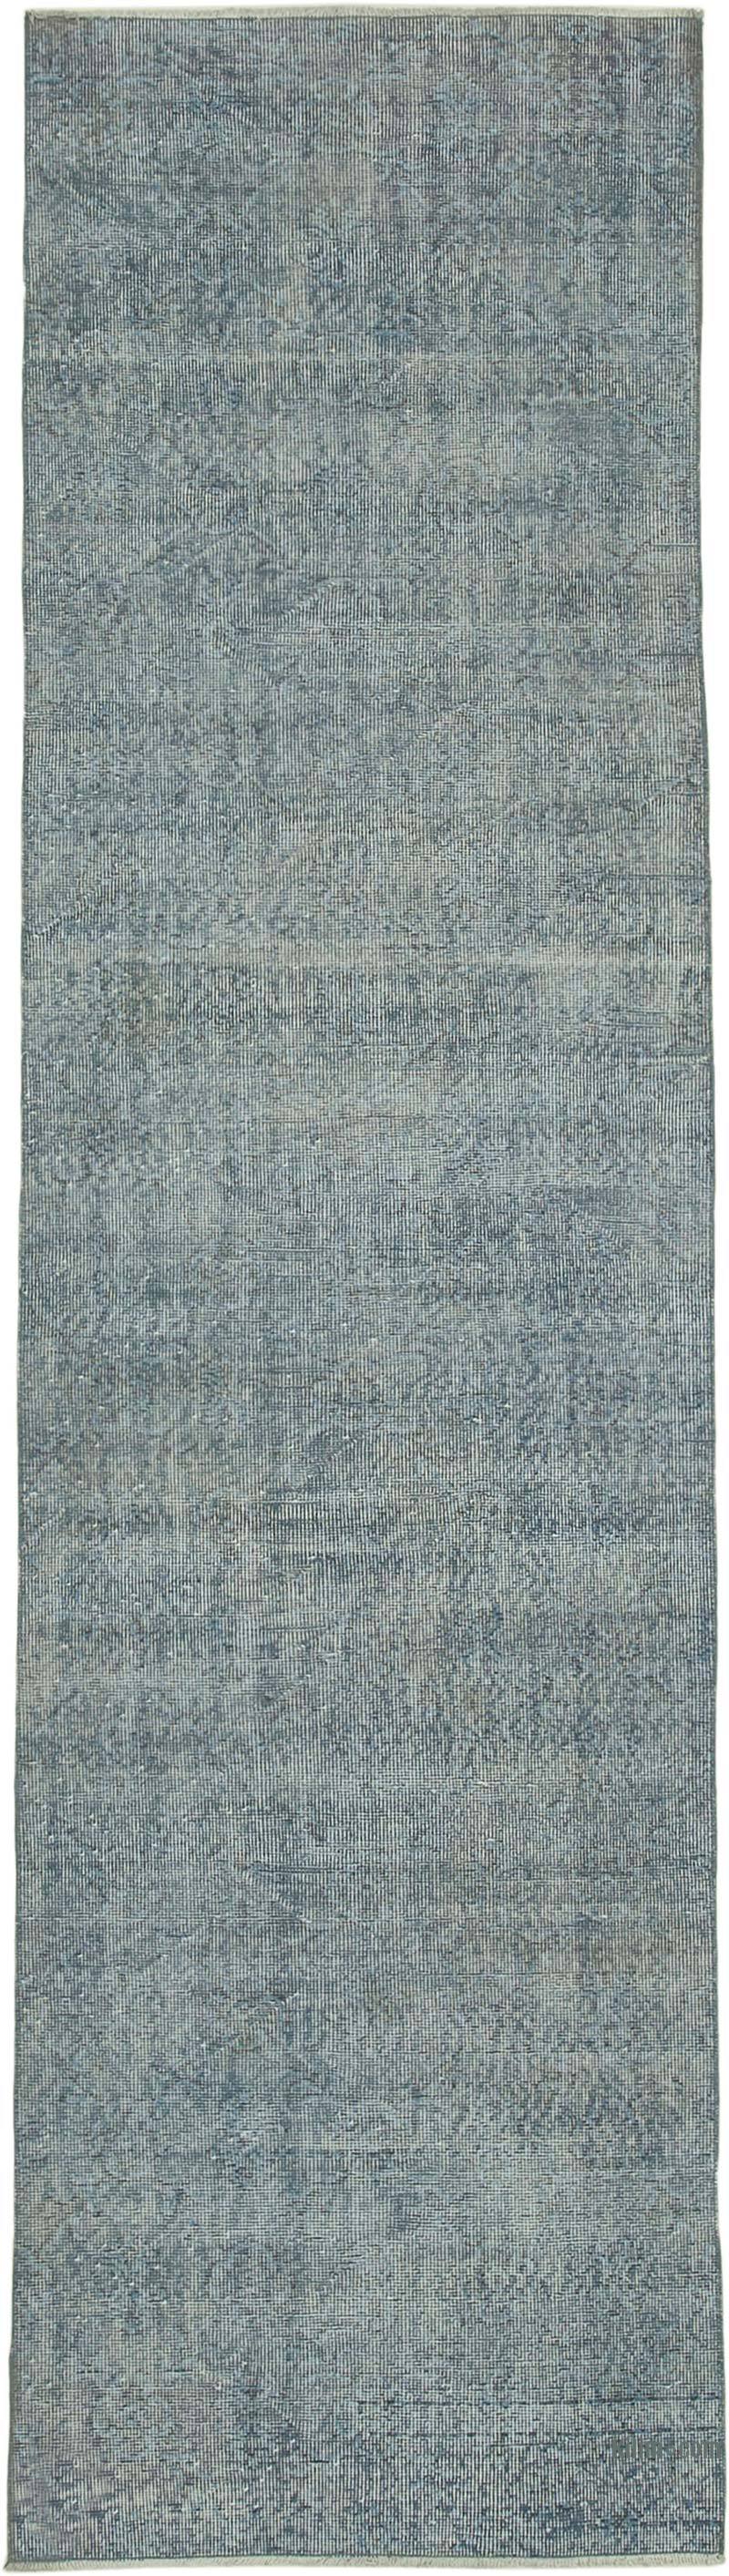 Lacivert Boyalı El Dokuma Vintage Halı Yolluk - 91 cm x 335 cm - K0052235